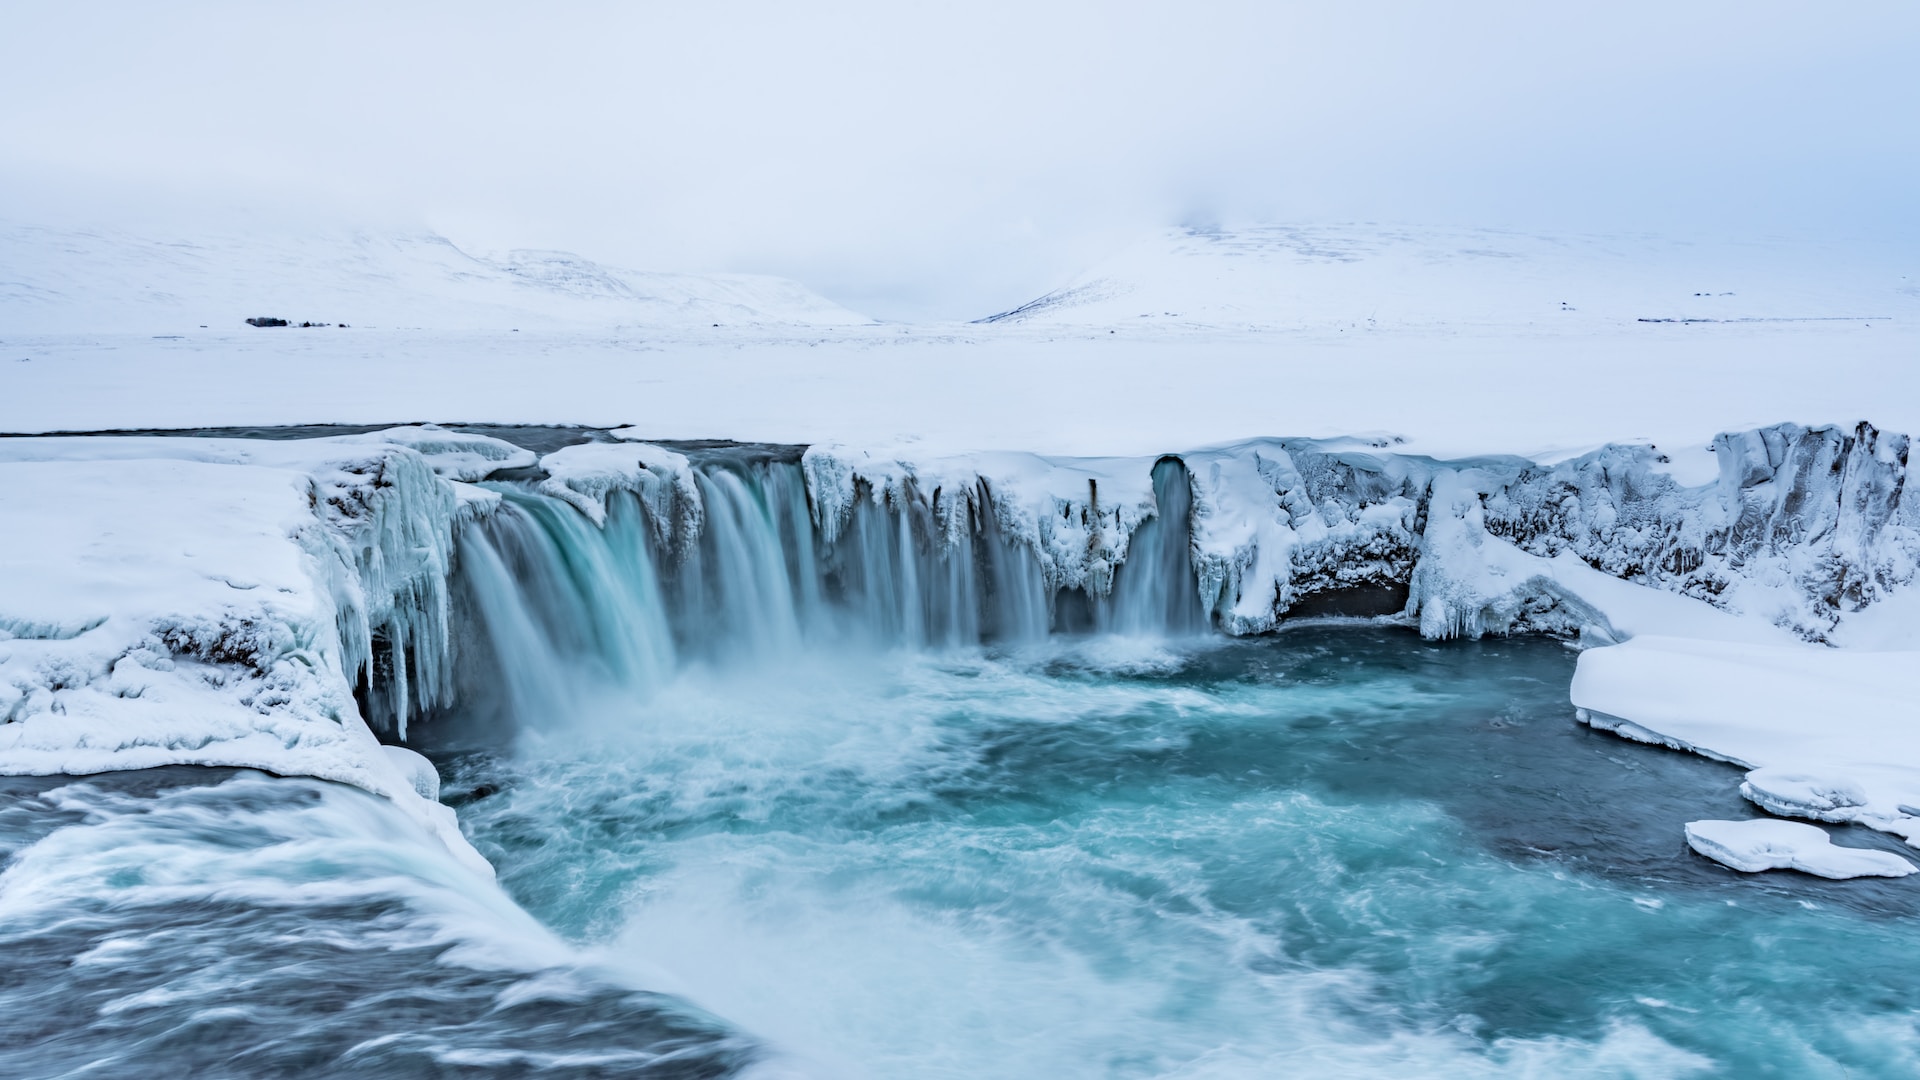 L'Islande en hiver : il y règne un grand froid, mais vous aurez l'avantage de profiter de paysages sublimes